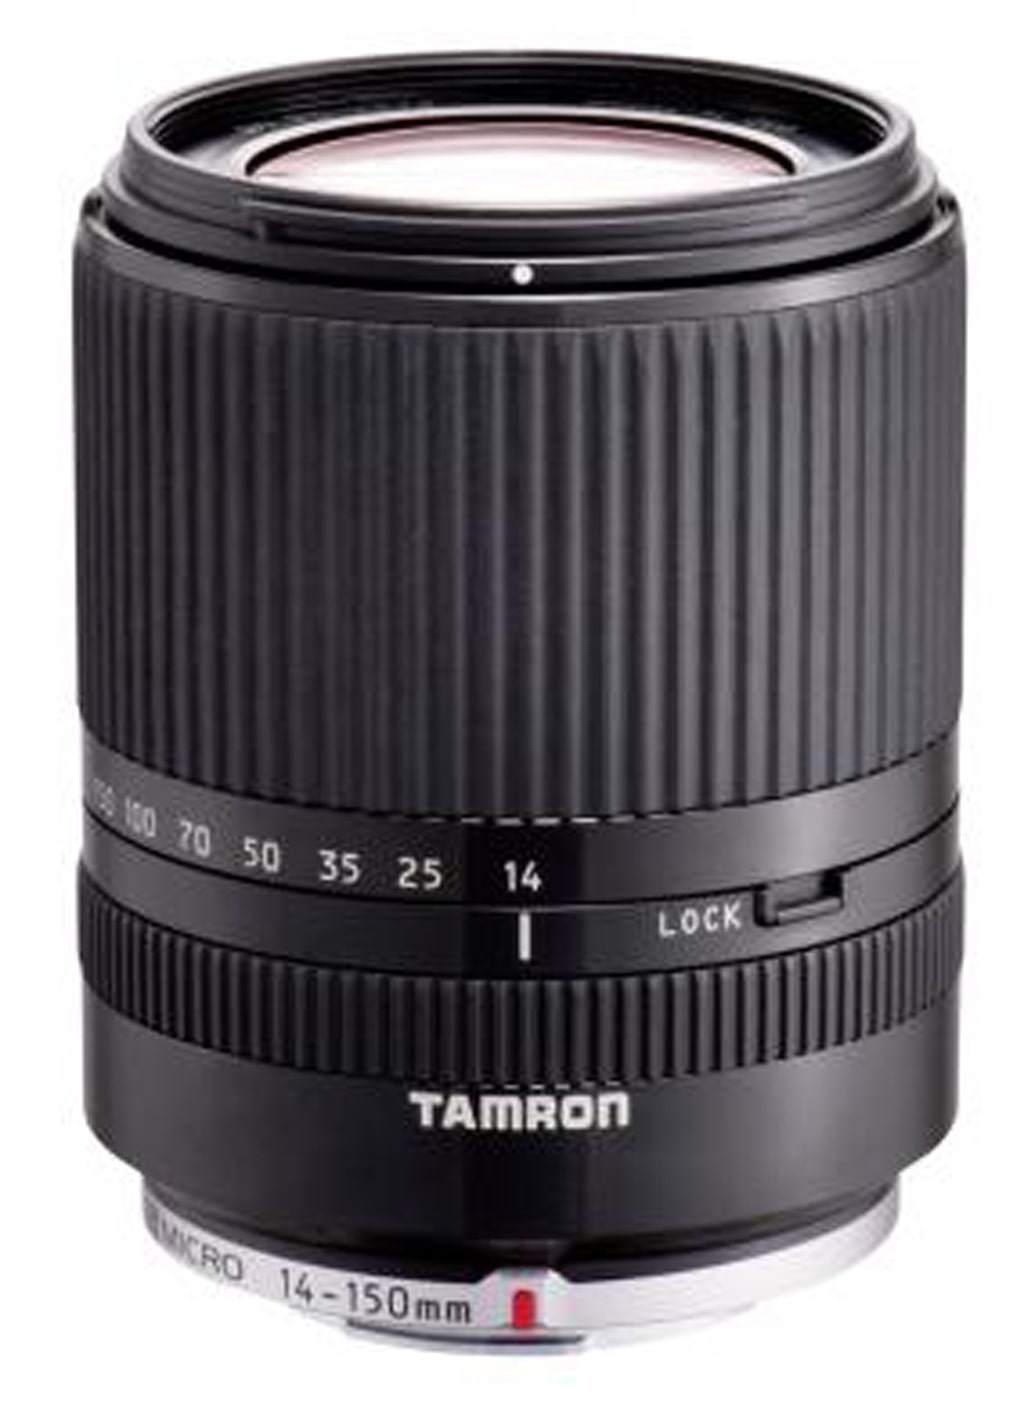 Tamron 14-150mm 1:3,5-5,8 Di III schwarz für MFT